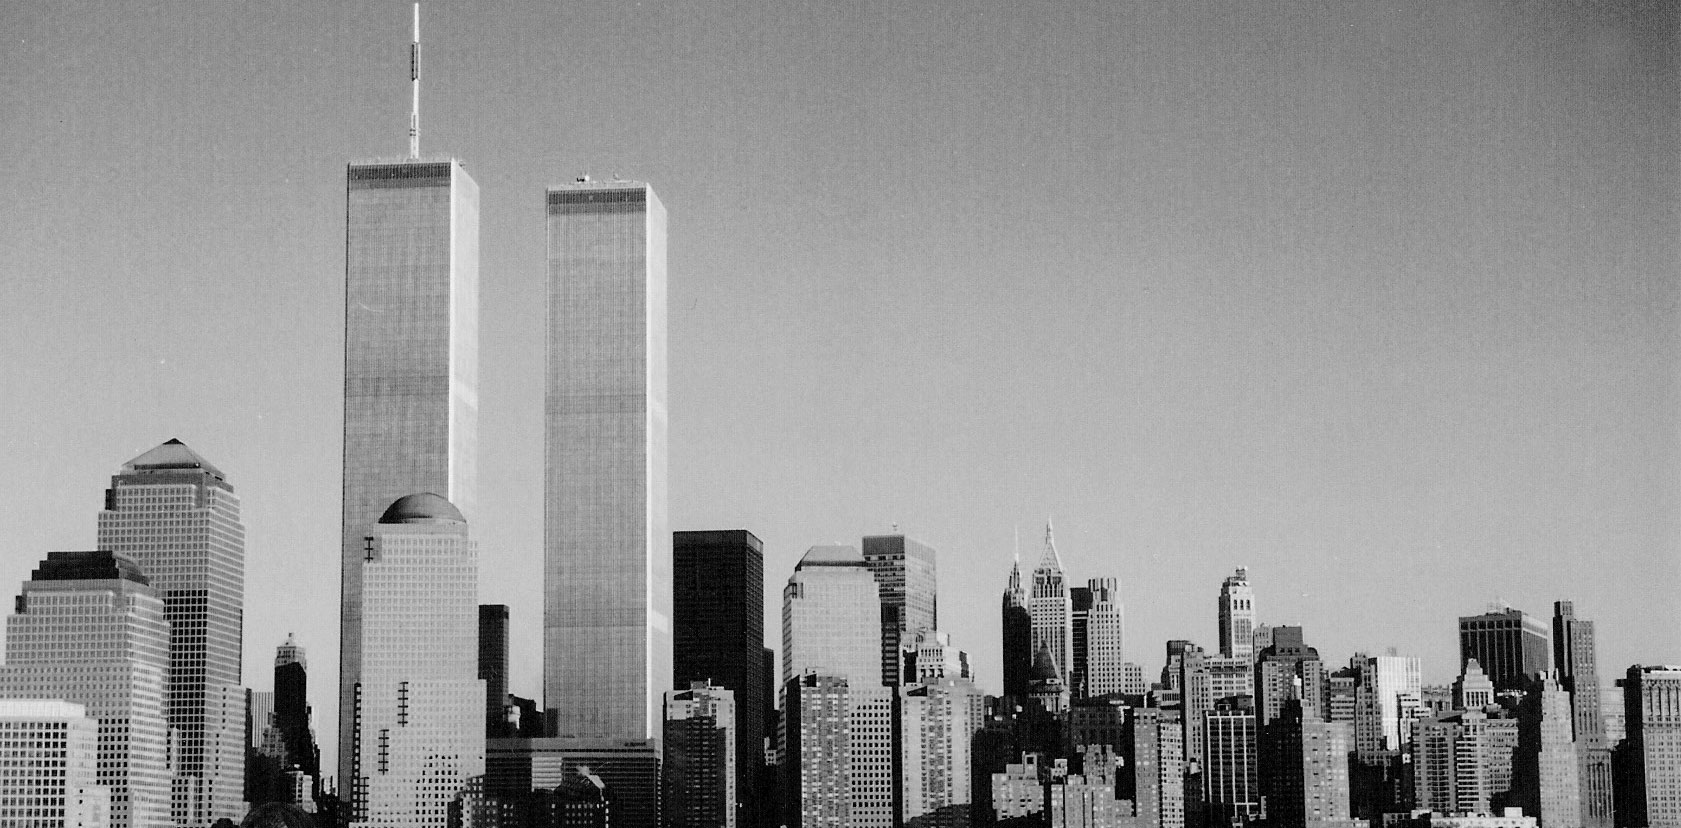 DESTINATION : World Trade Center Towers – PRE 911